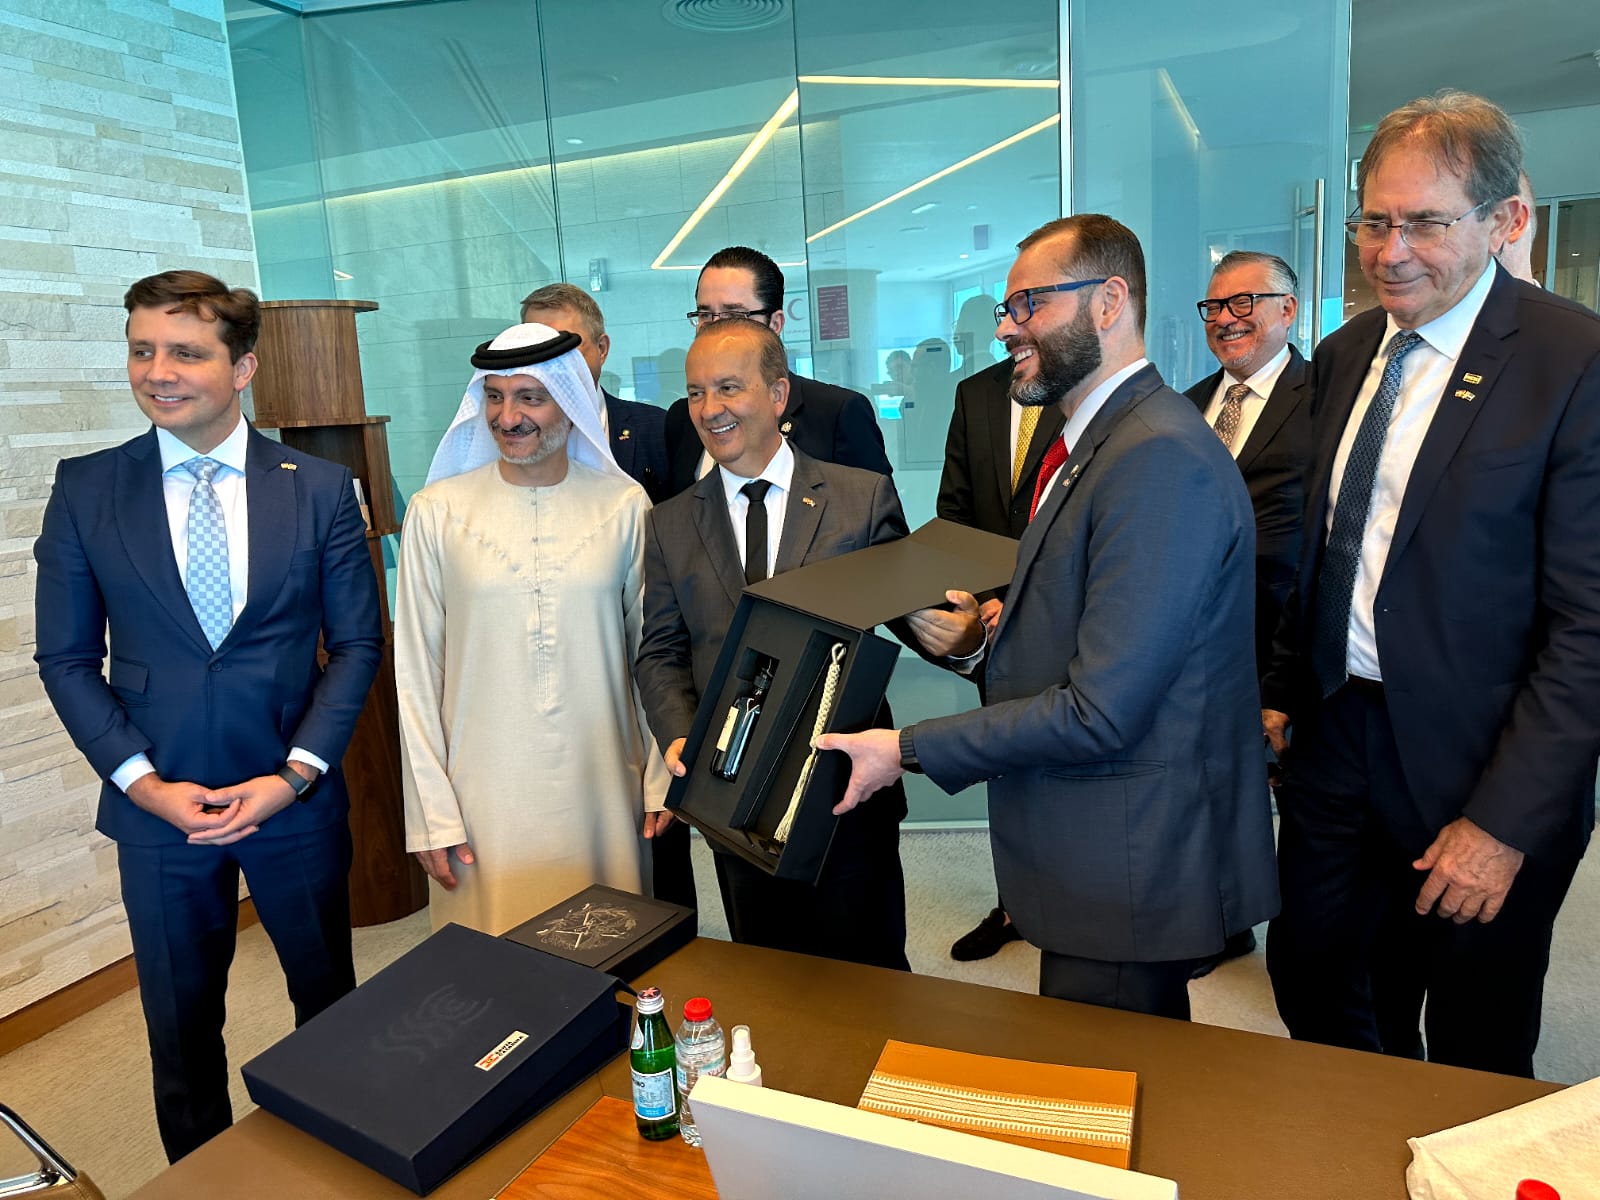 O Governador de Santa Catarina, Jorginho Mello, se reuniu com o Departamento de Turismo de Abu Dhabi nesta quarta-feira, 21, nos Emirados Árabes Unidos, durante a viagem da comitiva catarinense ao Oriente Médio.